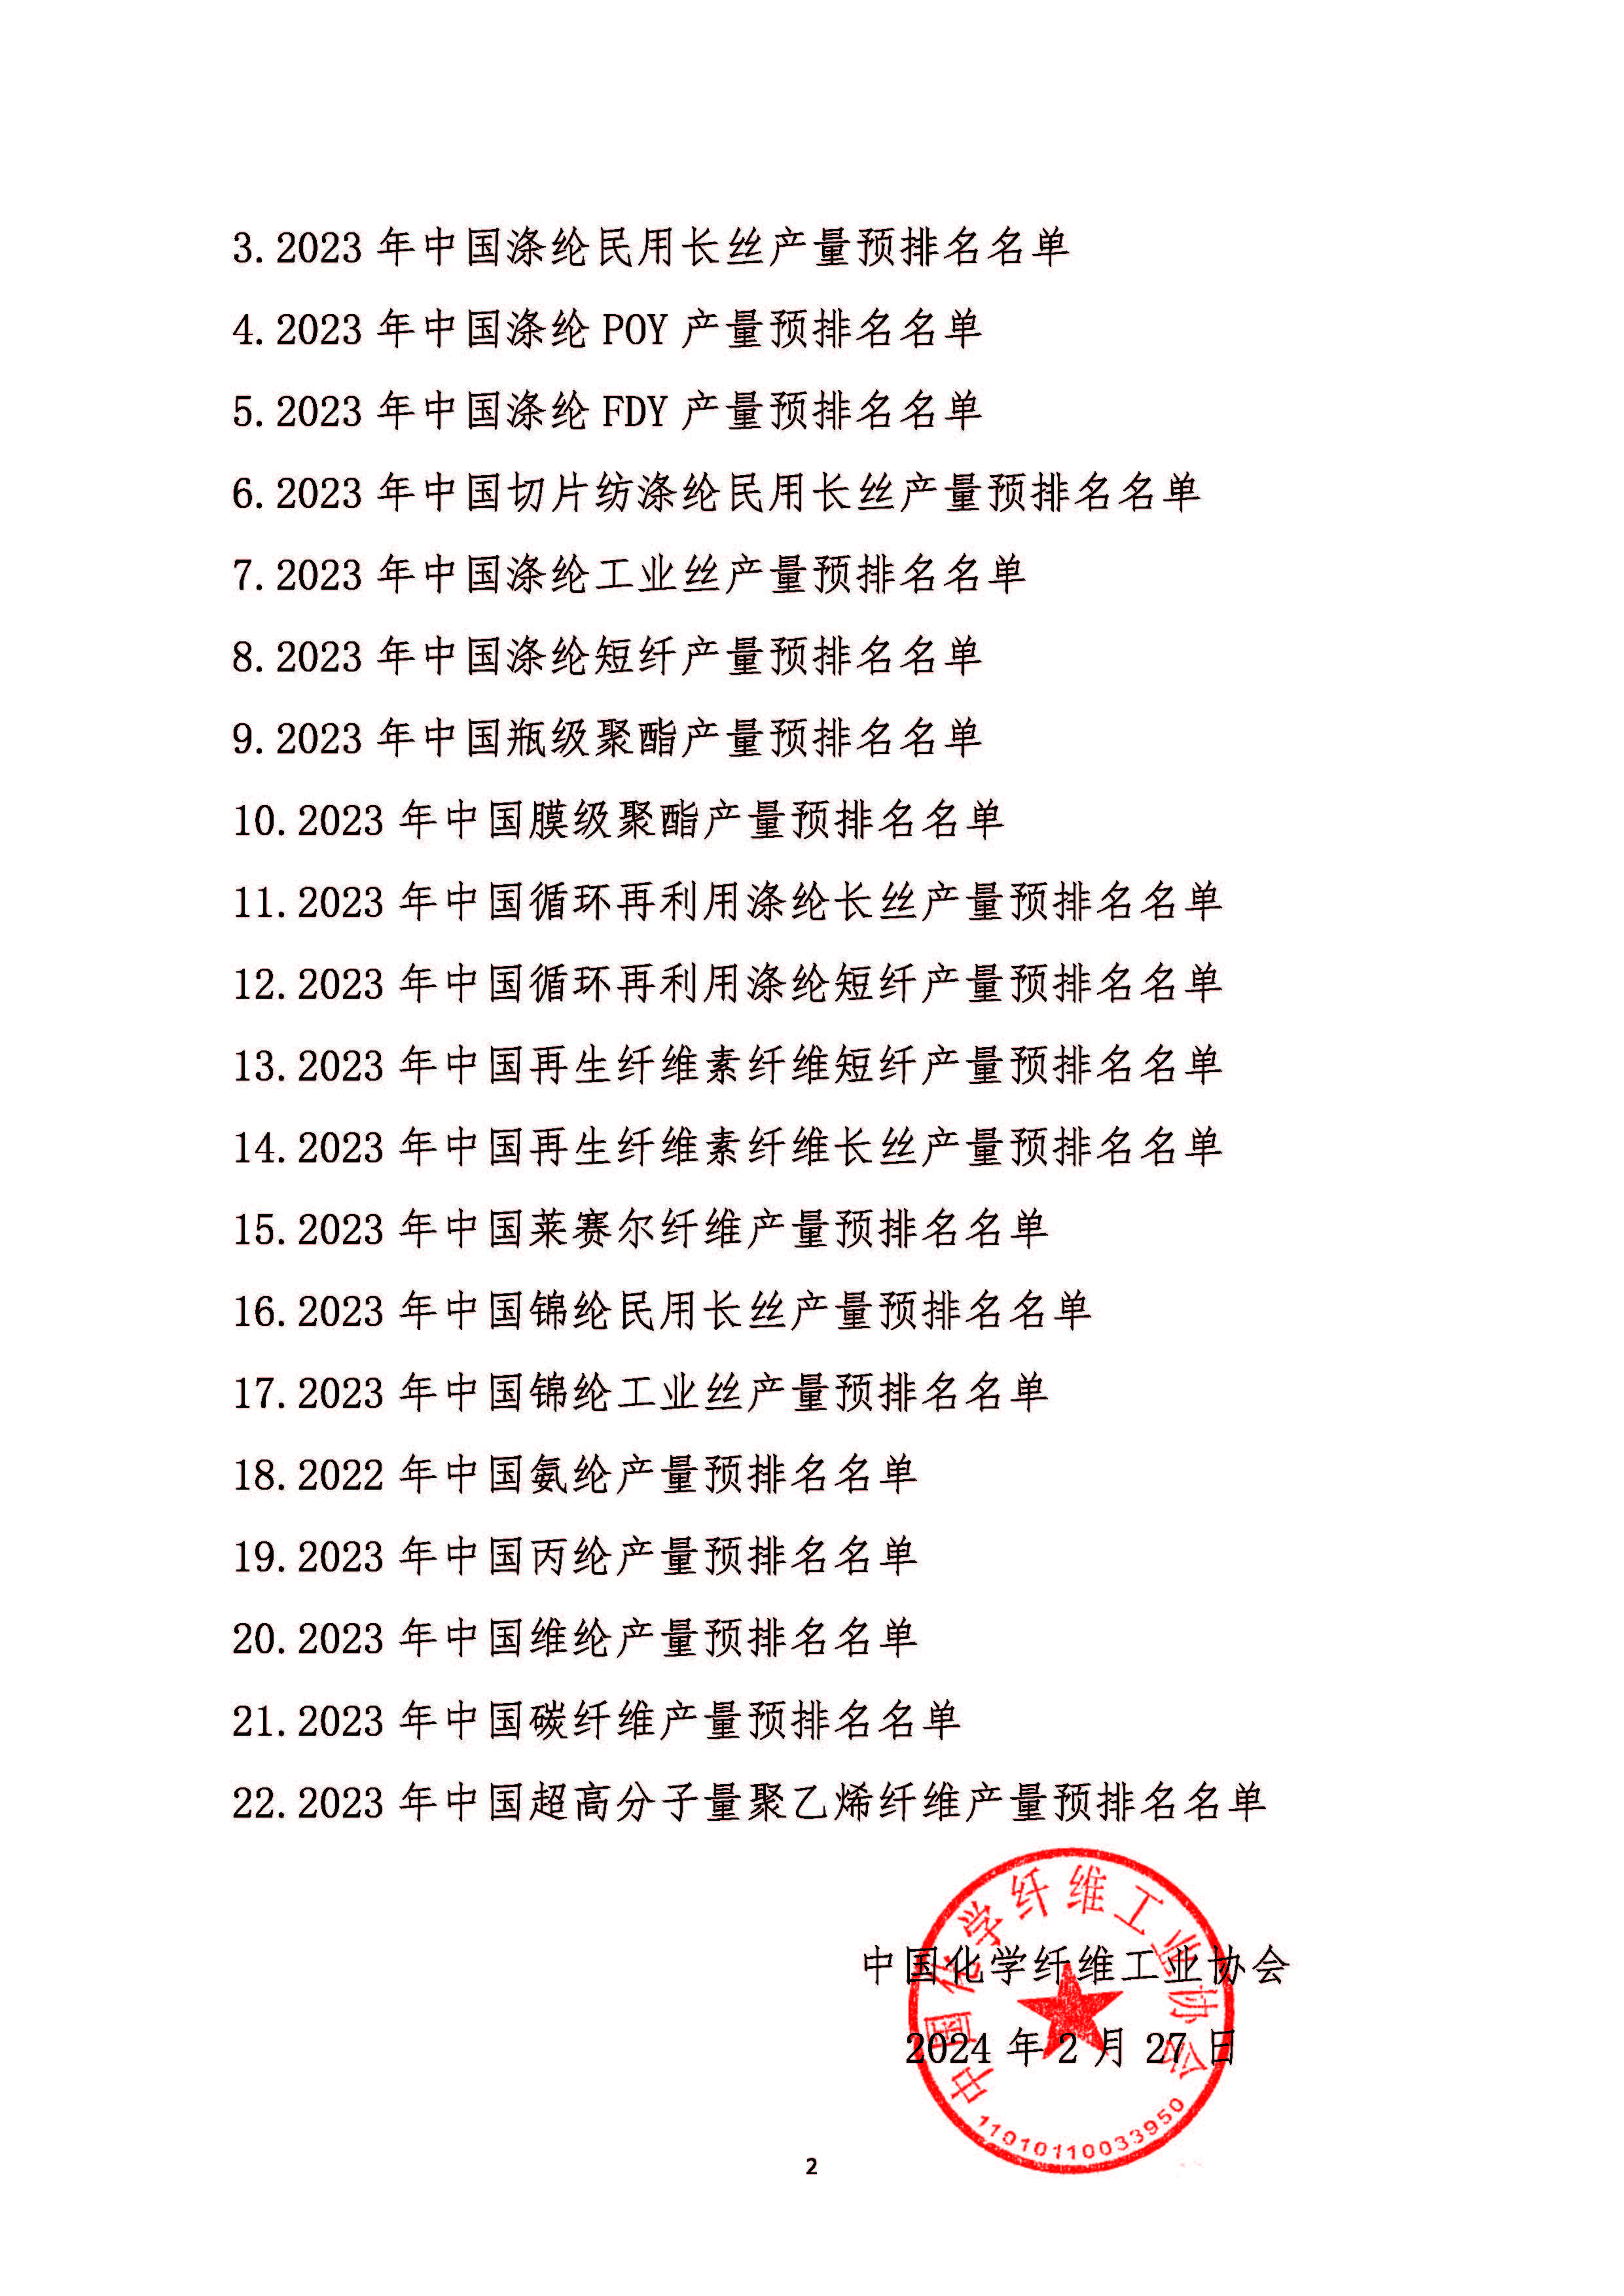 关于发布2023年中国化纤行业产量预排名名单及启动正式排名工作的通知20240227(1)_页面_02.jpg